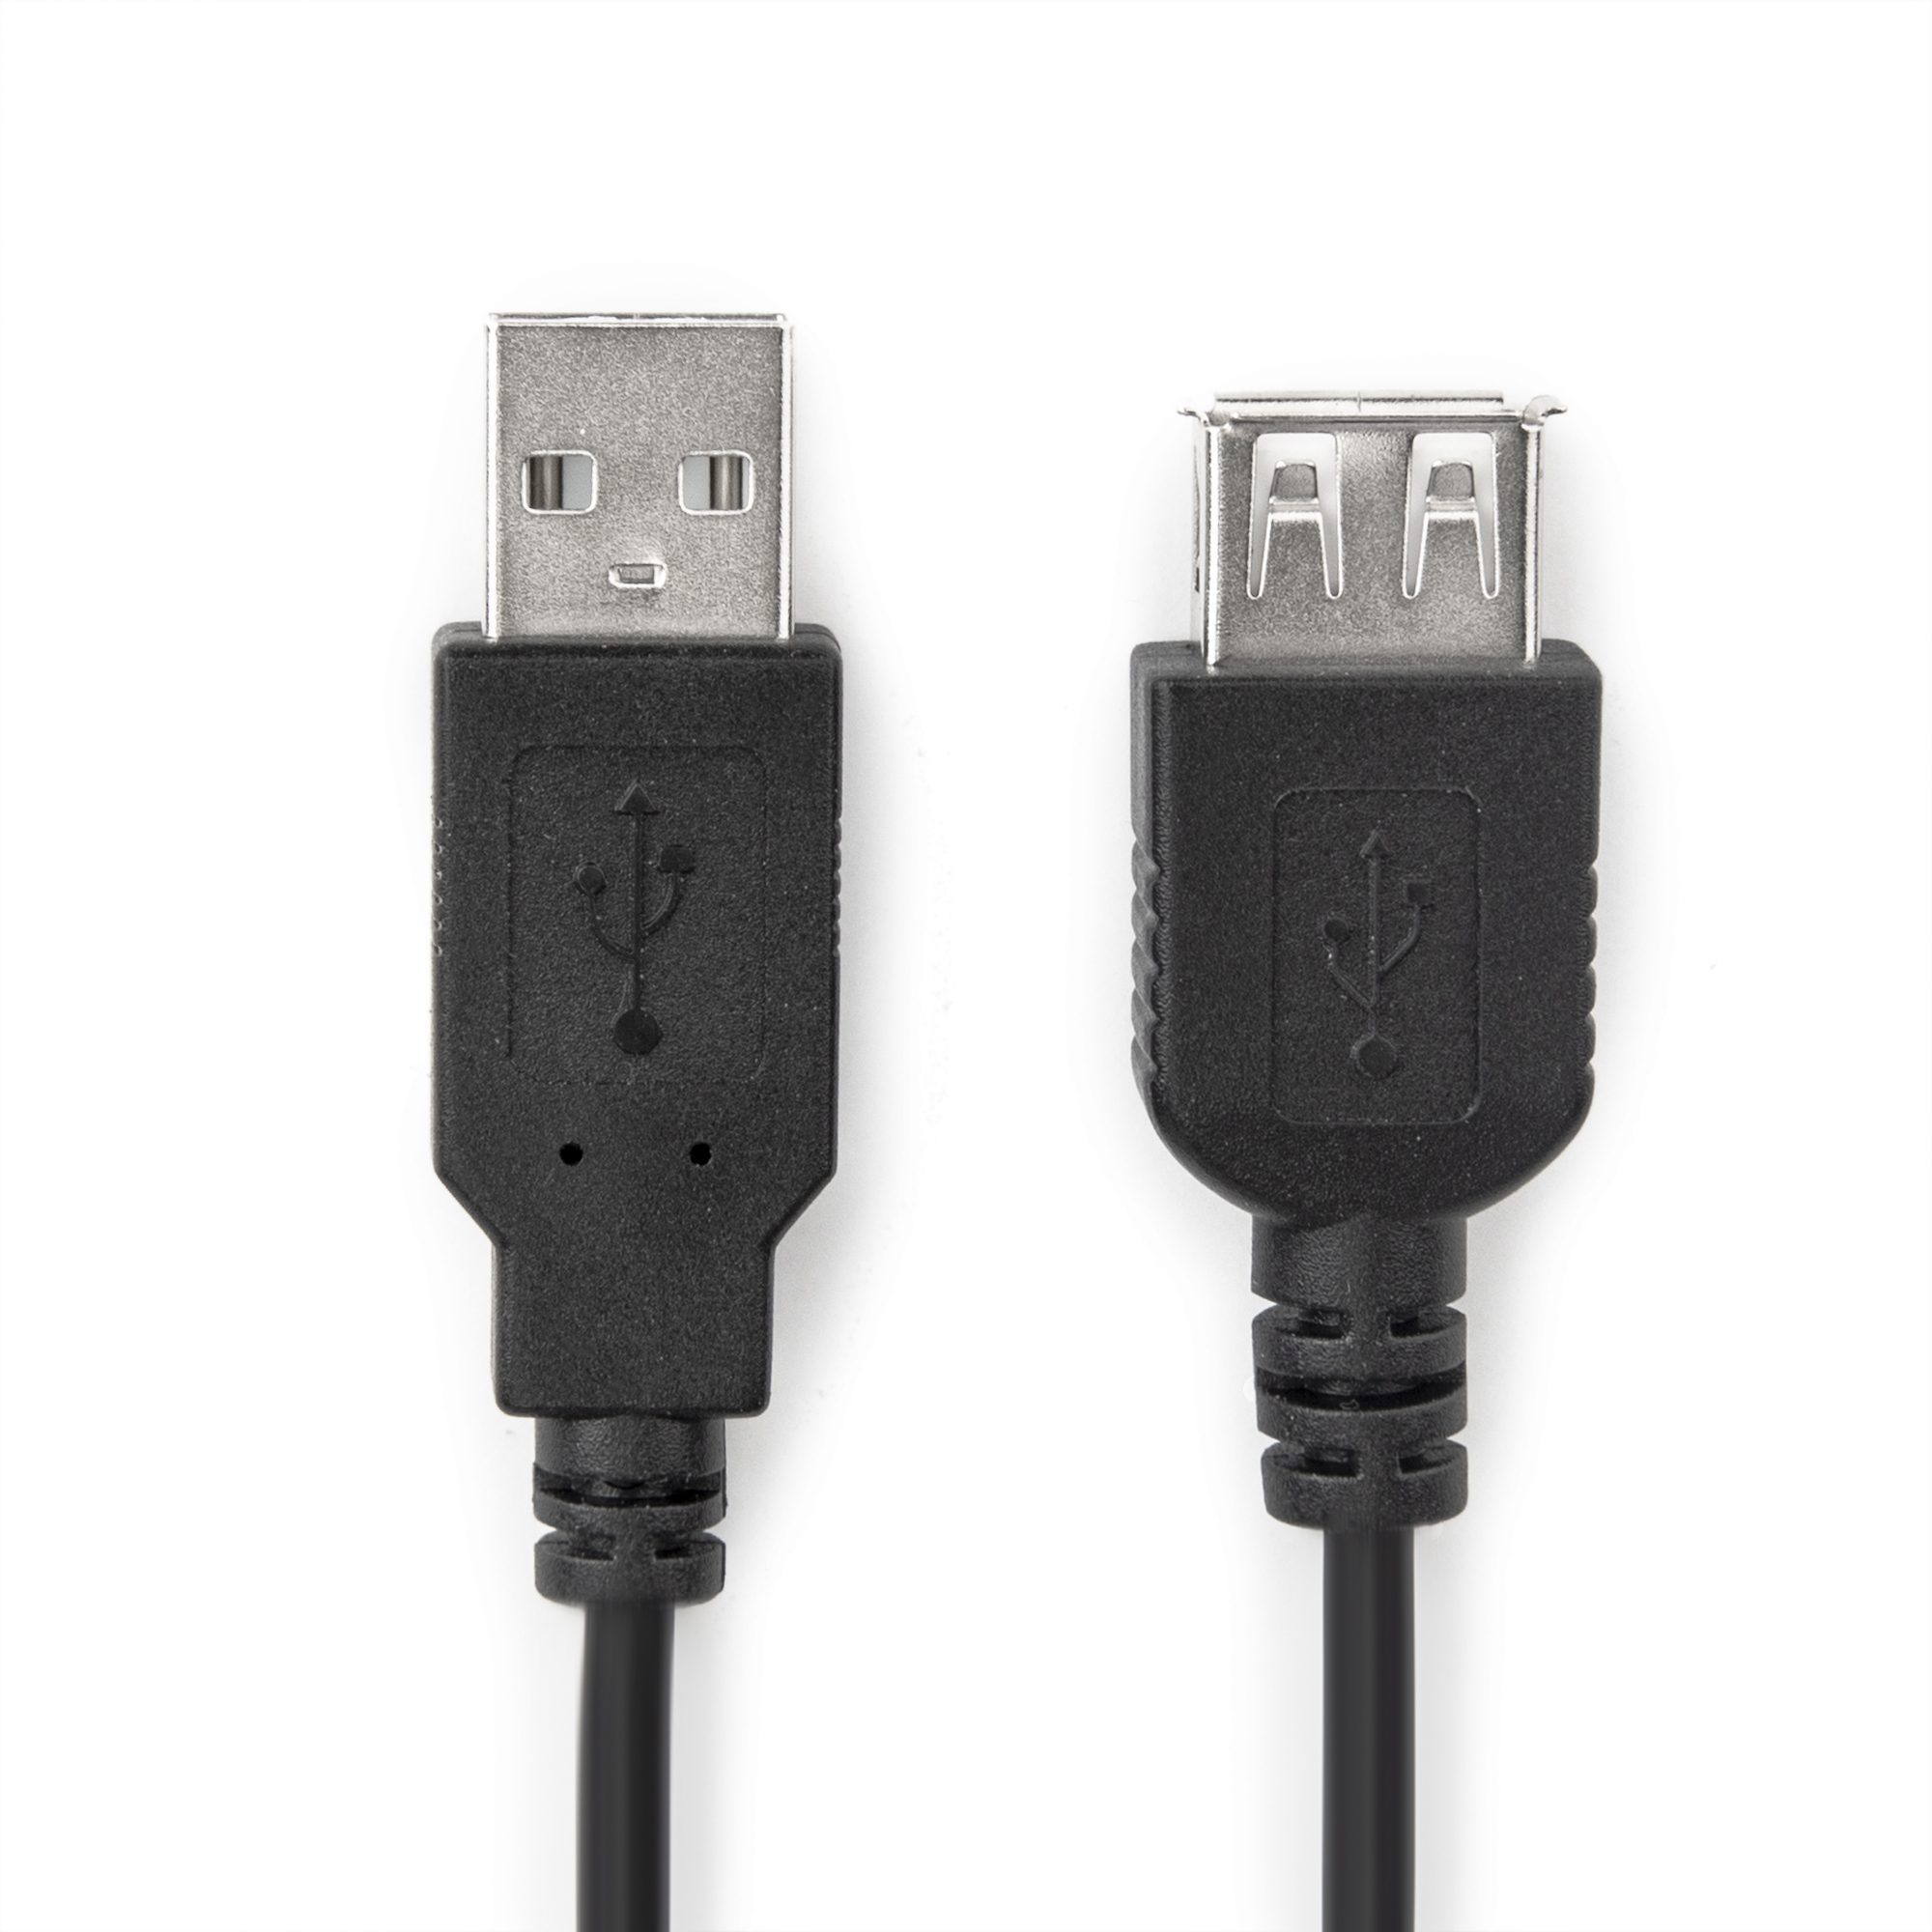 Rocstor Premier USB 2.0 Extension Cable A Male A Female